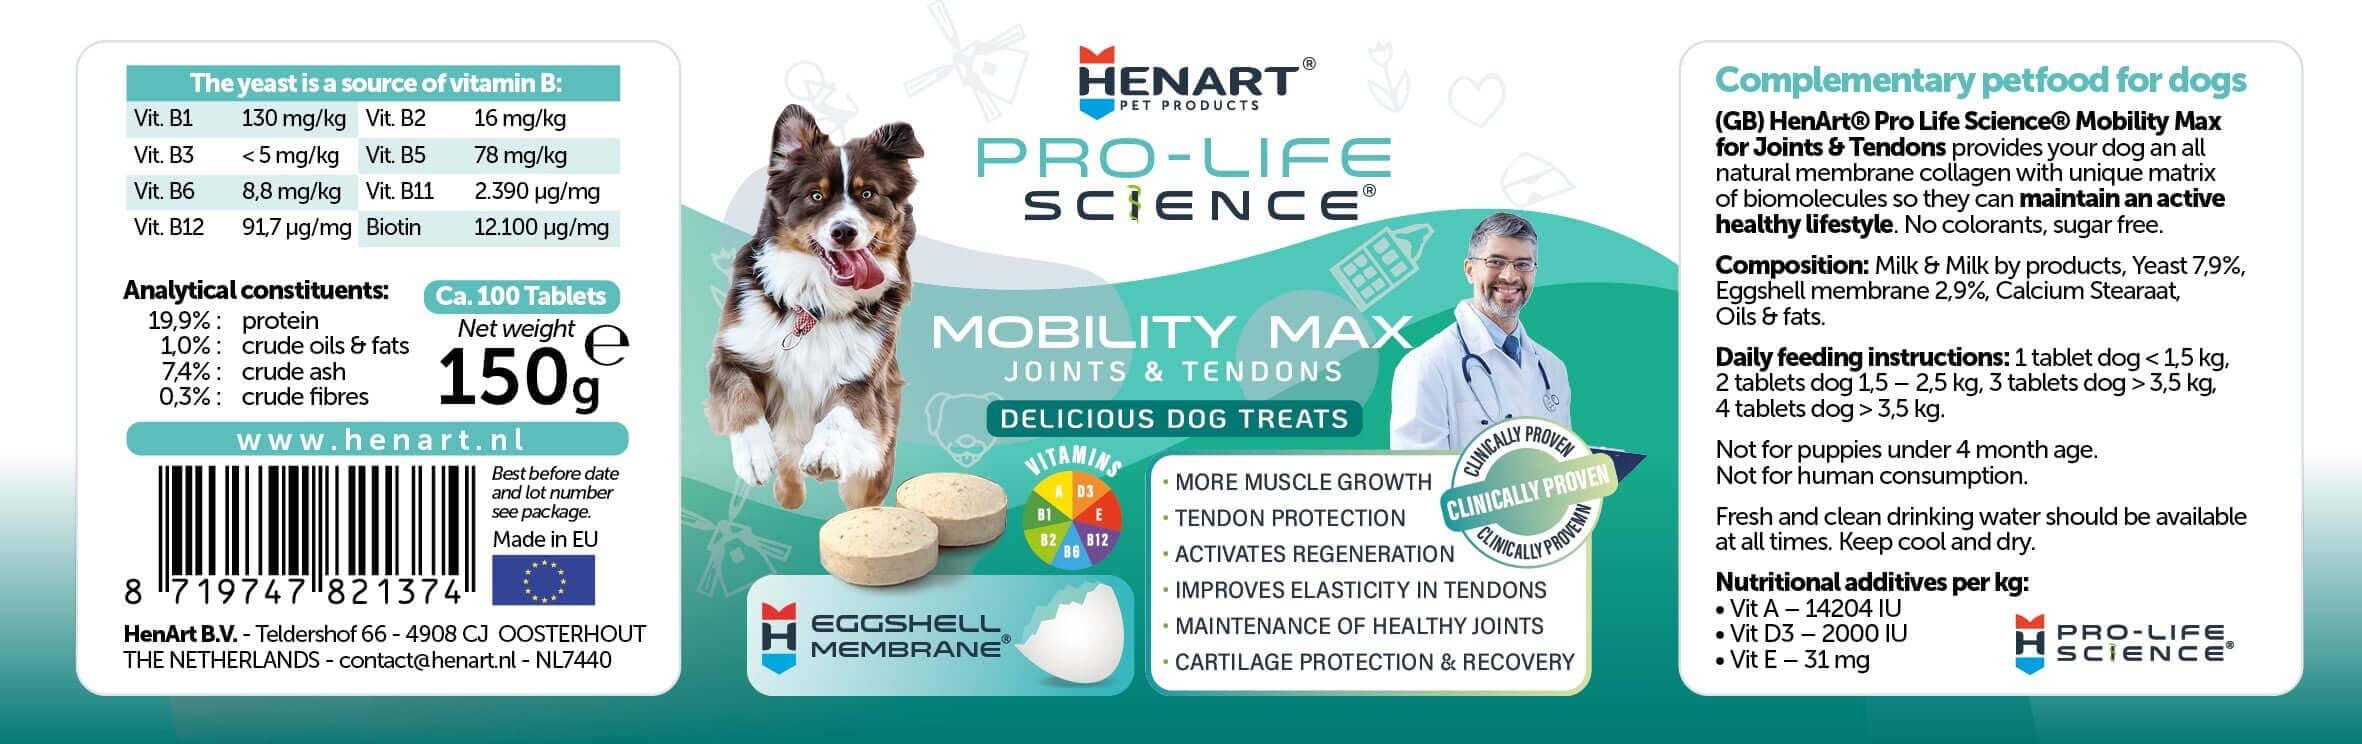 Hunde-Nahrungsergänzung für mehr Bewegung & Mobilität - HenArt® | Nachhaltiges Tierfutter für Hund und Katze 